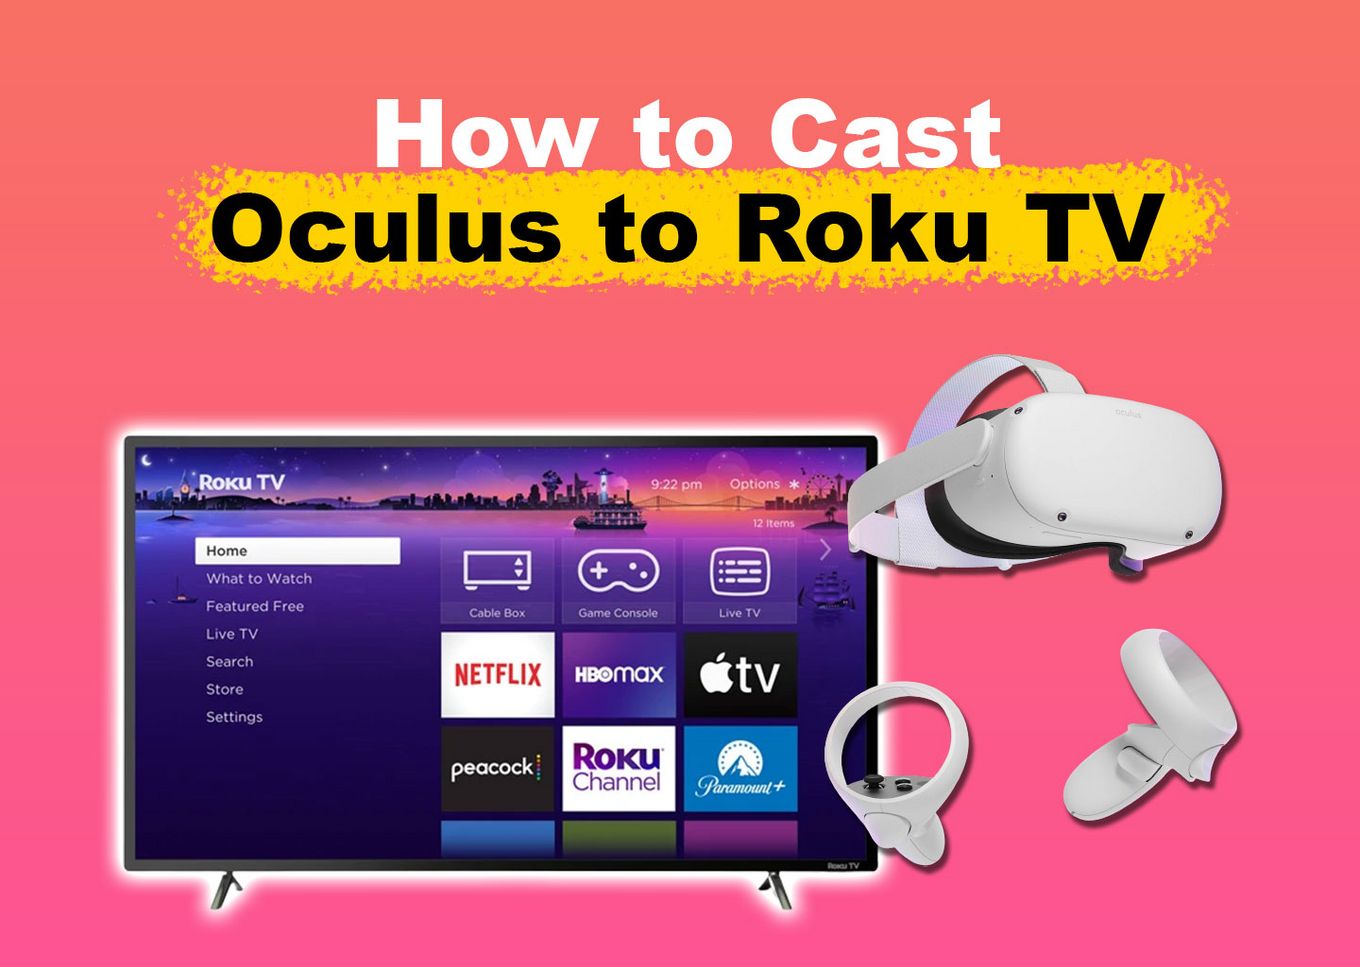 Casting Oculus Quest 2 to Roku TV